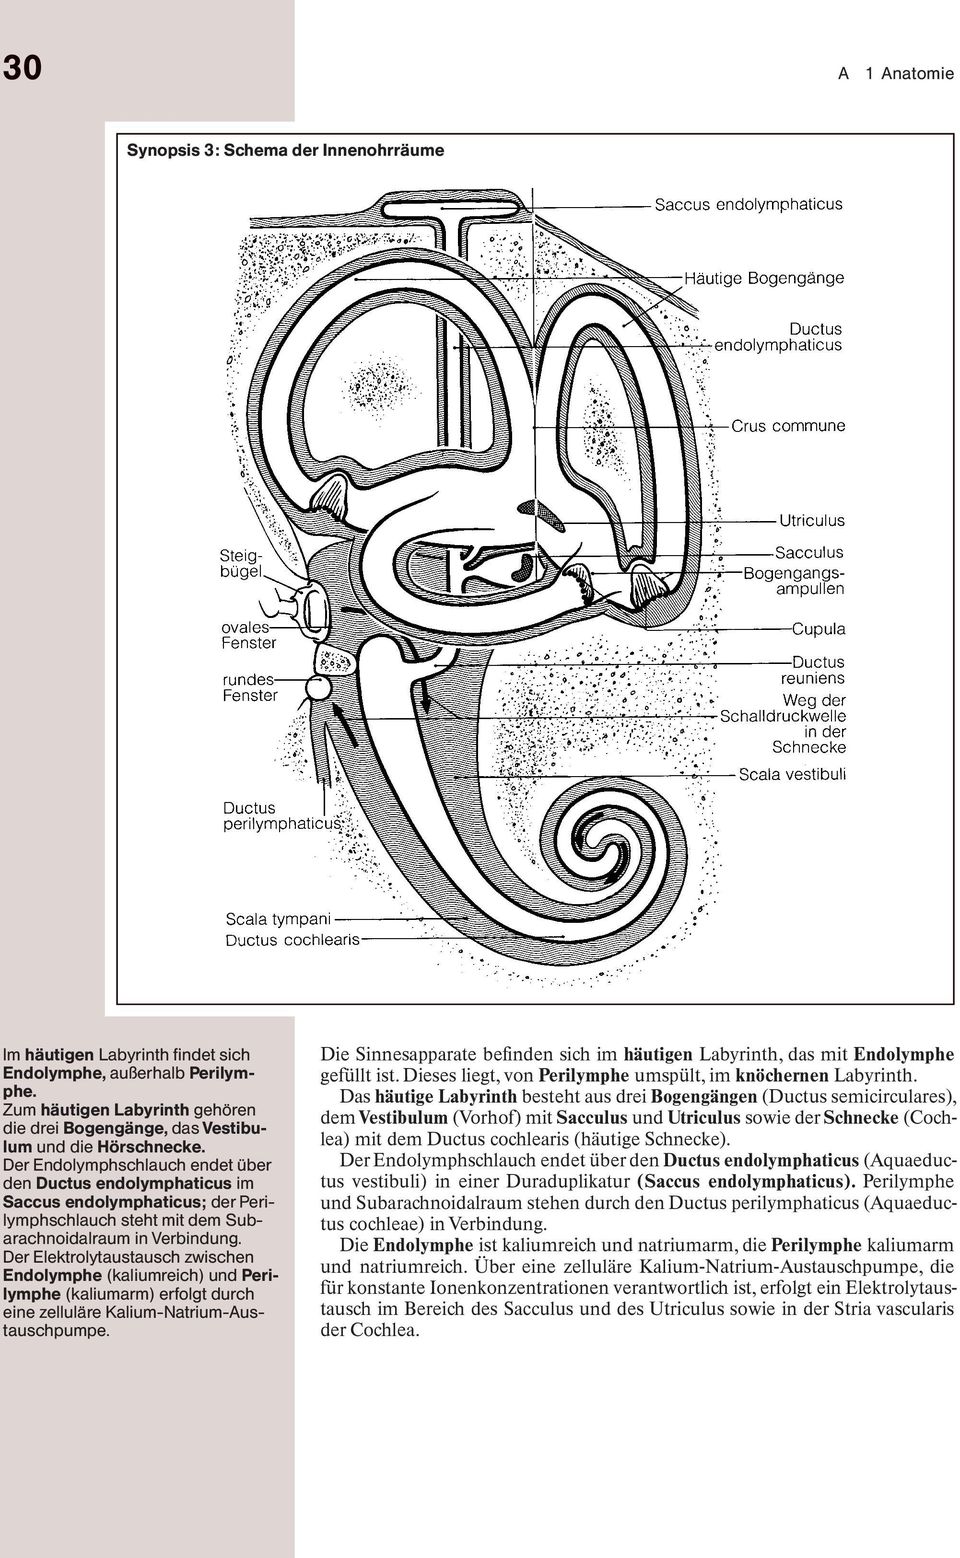 Der Endolymphschlauch endet über den Ductus endolymphaticus im Saccus endolymphaticus; der Perilymphschlauch steht mit dem Subarachnoidalraum in Verbindung.